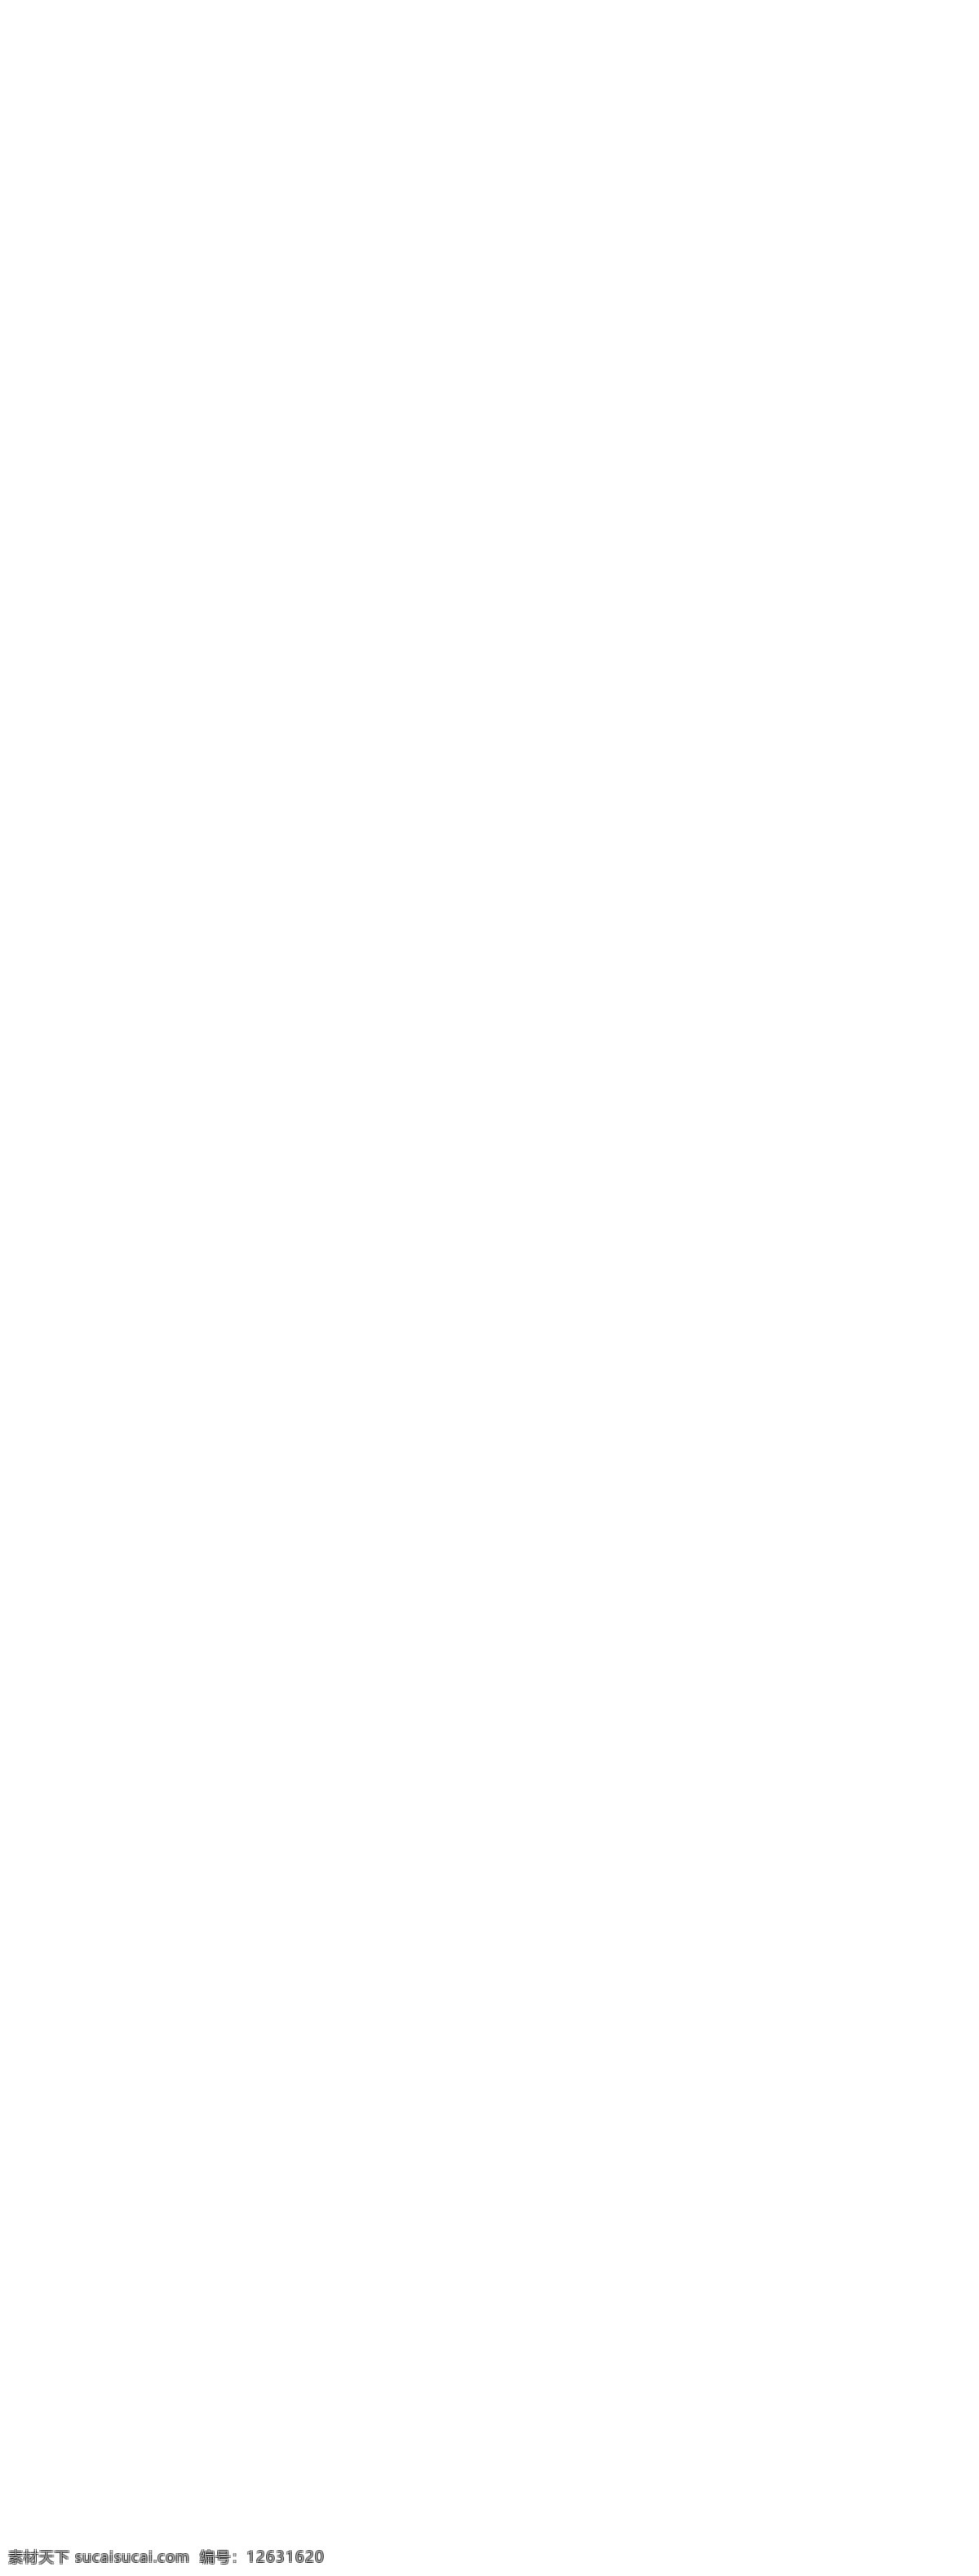 淘宝 质感 名牌 手表 促销 页面 模版 年中大促 时尚手表 手表广告 摄影手表 手表名片 瑞士手表 手表装饰画 手表杂志 手表形象 手表传单 手表单页 手表折页 手表淘宝首页 手表淘宝模板 手表淘宝形象 手表x展架 机械表 机械表海报 手表展架 手表设计 手表画册 手表网页 手表促销 手表淘宝 手表高炮 情侣手表 精美电商广告 淘宝界面设计 淘宝装修模板